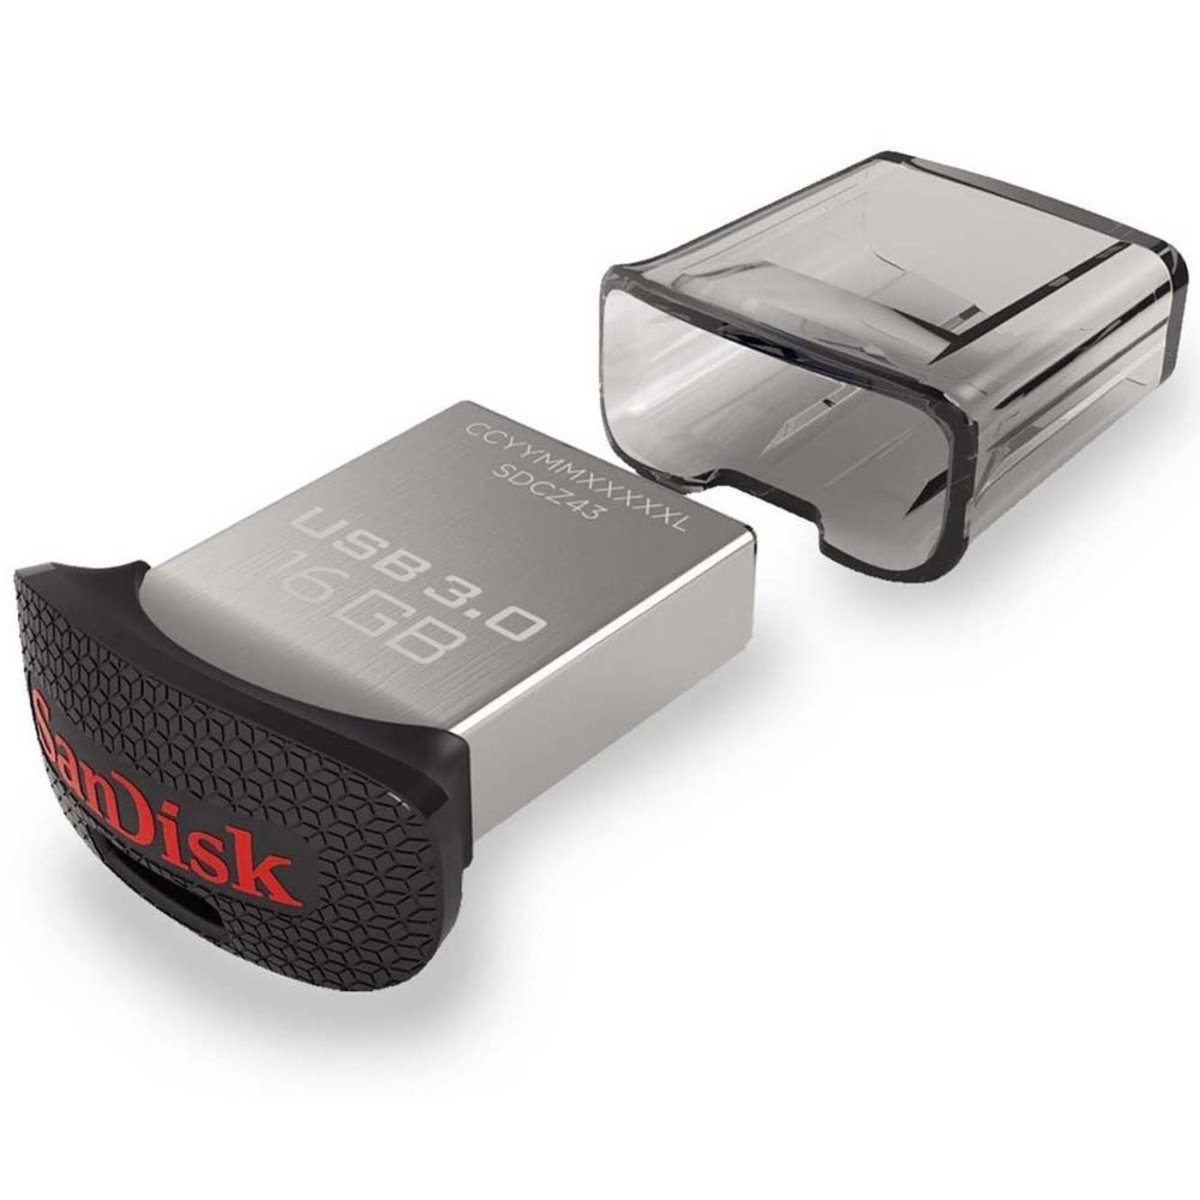 Sandisk Ultra Fit USB 3.0 Flash Drive 16GB